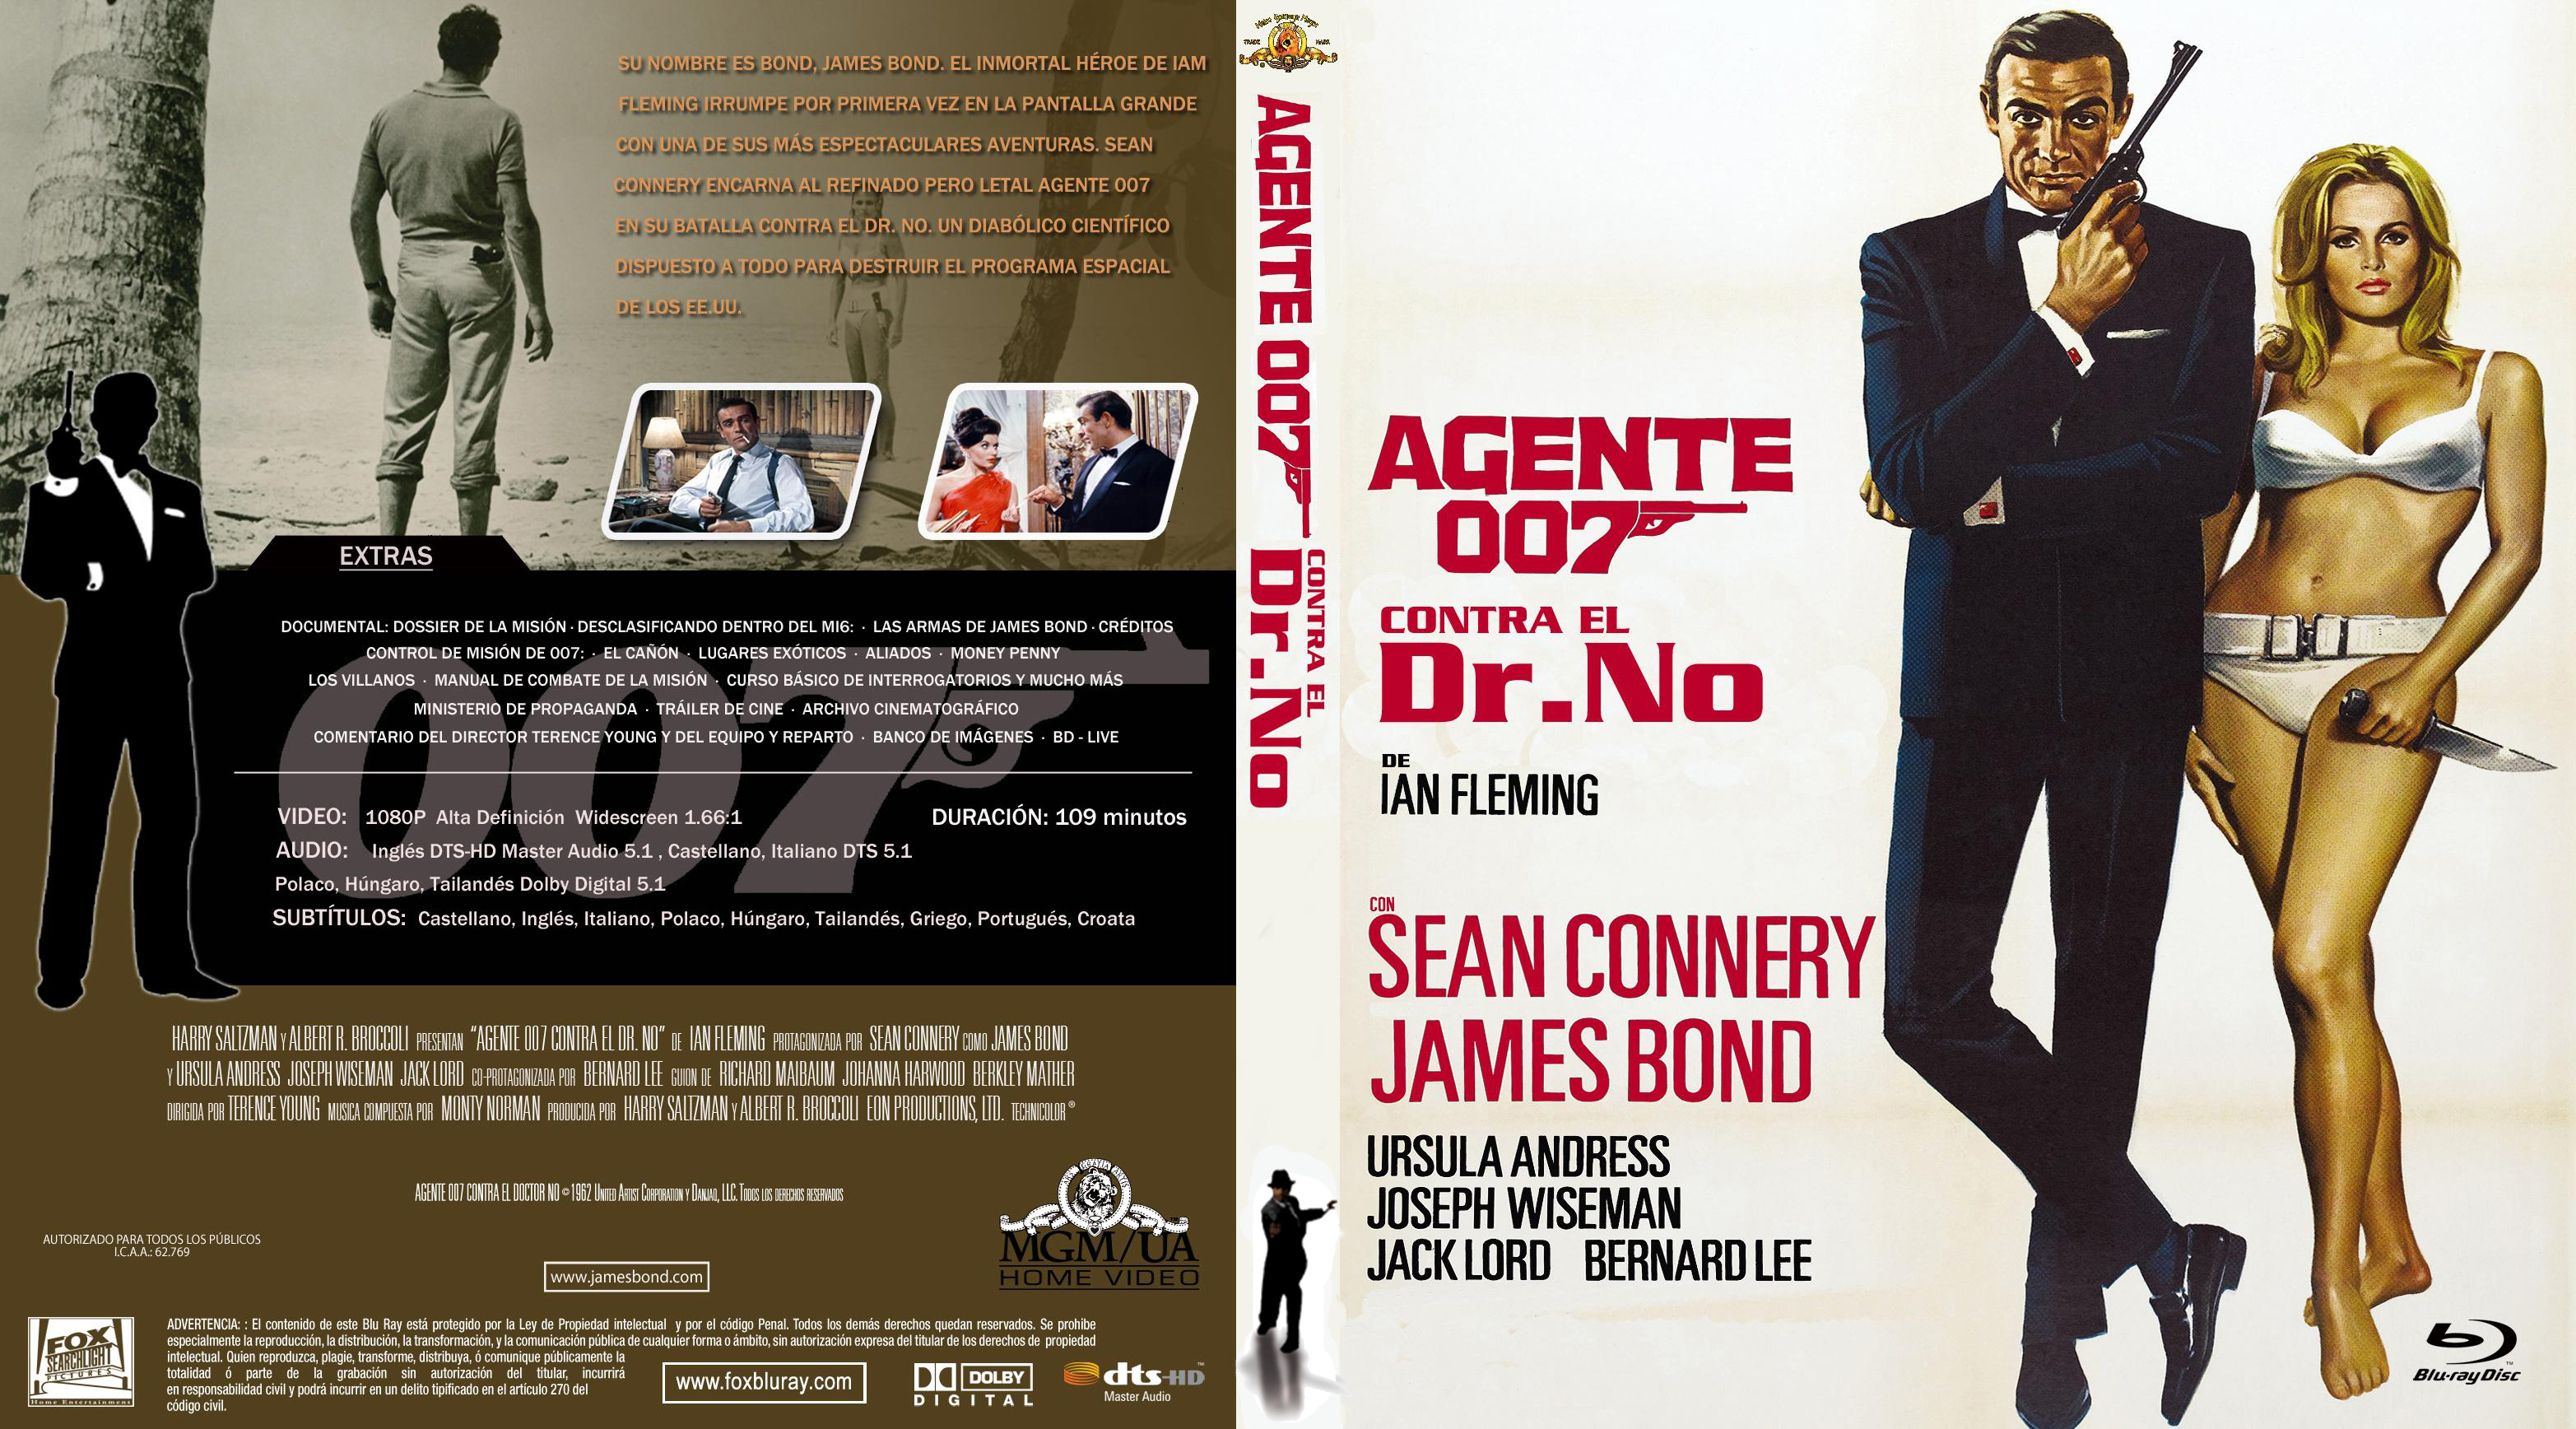 Agente 007 Contra El Dr No By Fenix19 On Deviantart